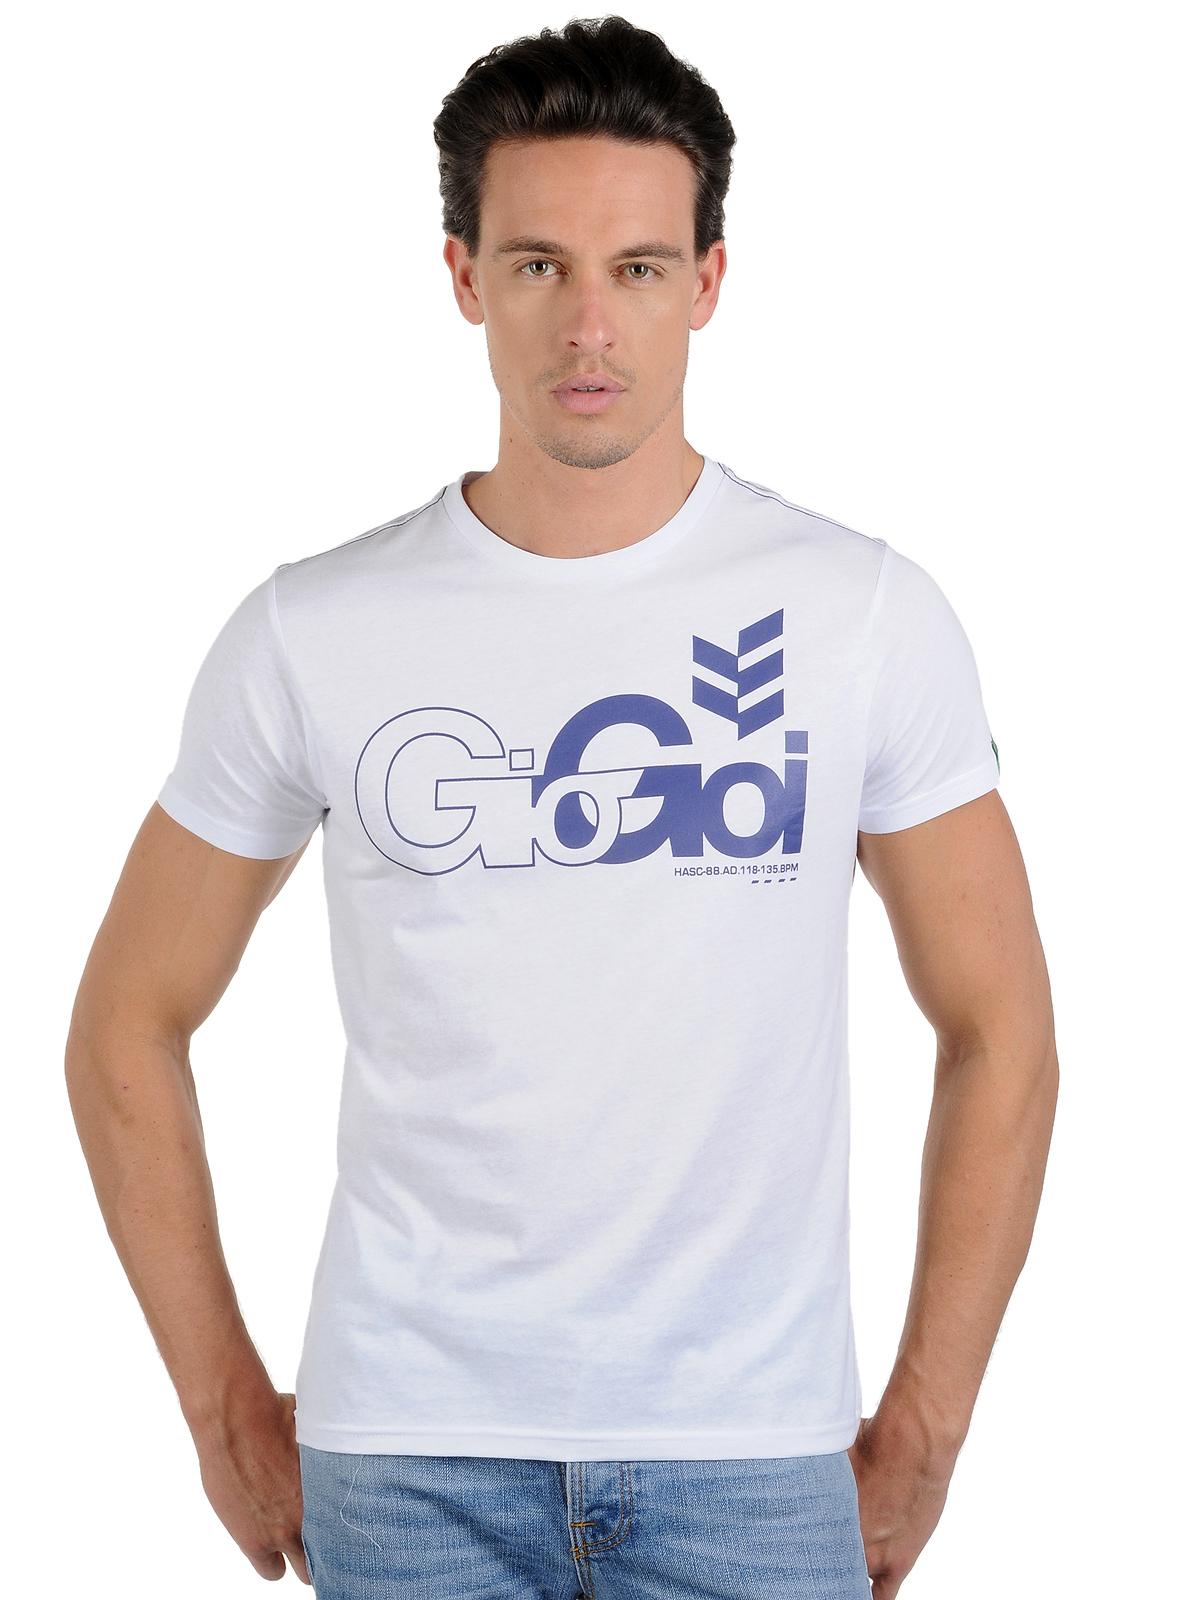 Foto Gio-Goi Camiseta blanco XL foto 963800